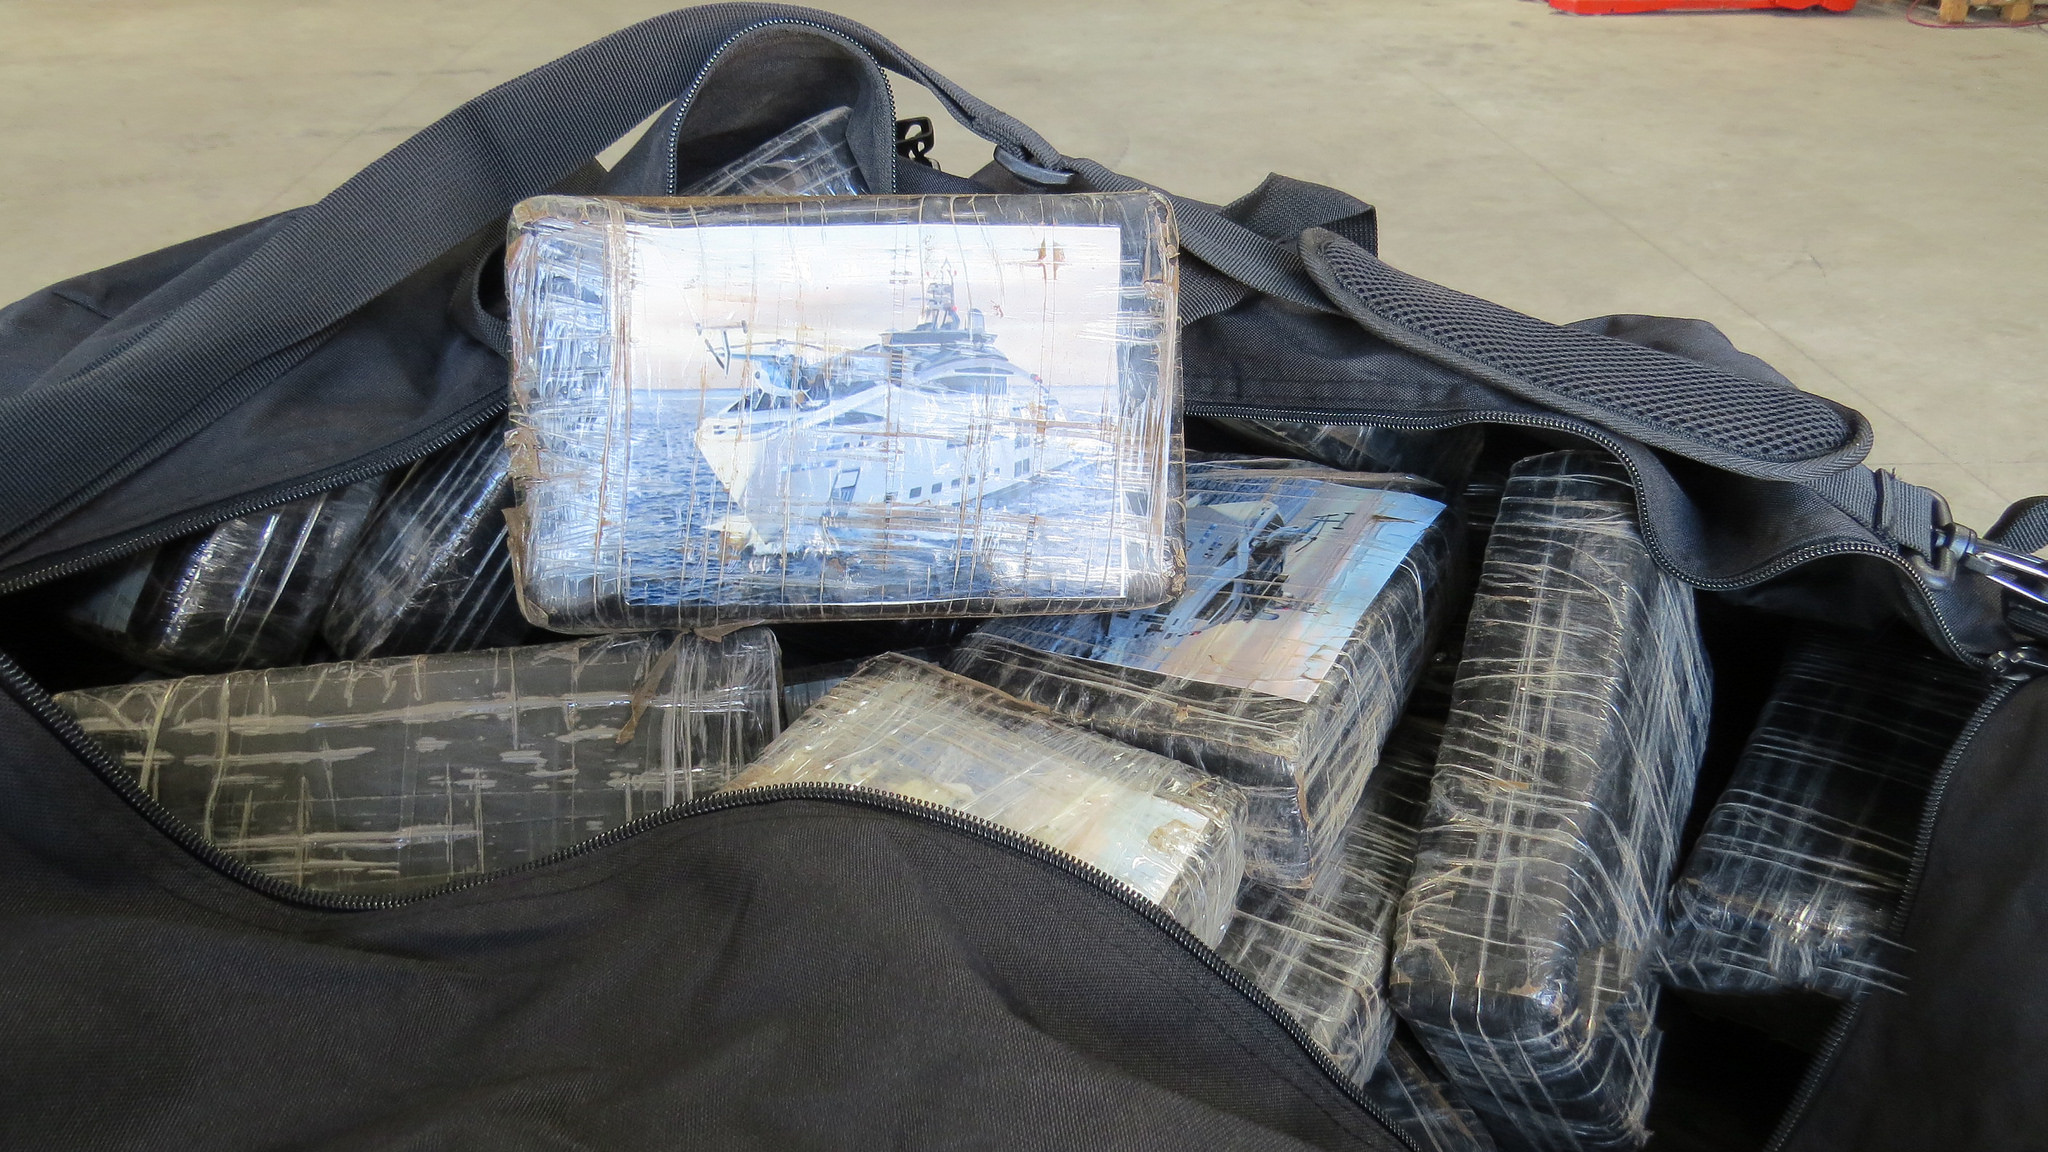 Les pains de cocaïne étaient entreposés dans des sacs de sport (Photo © Douane)